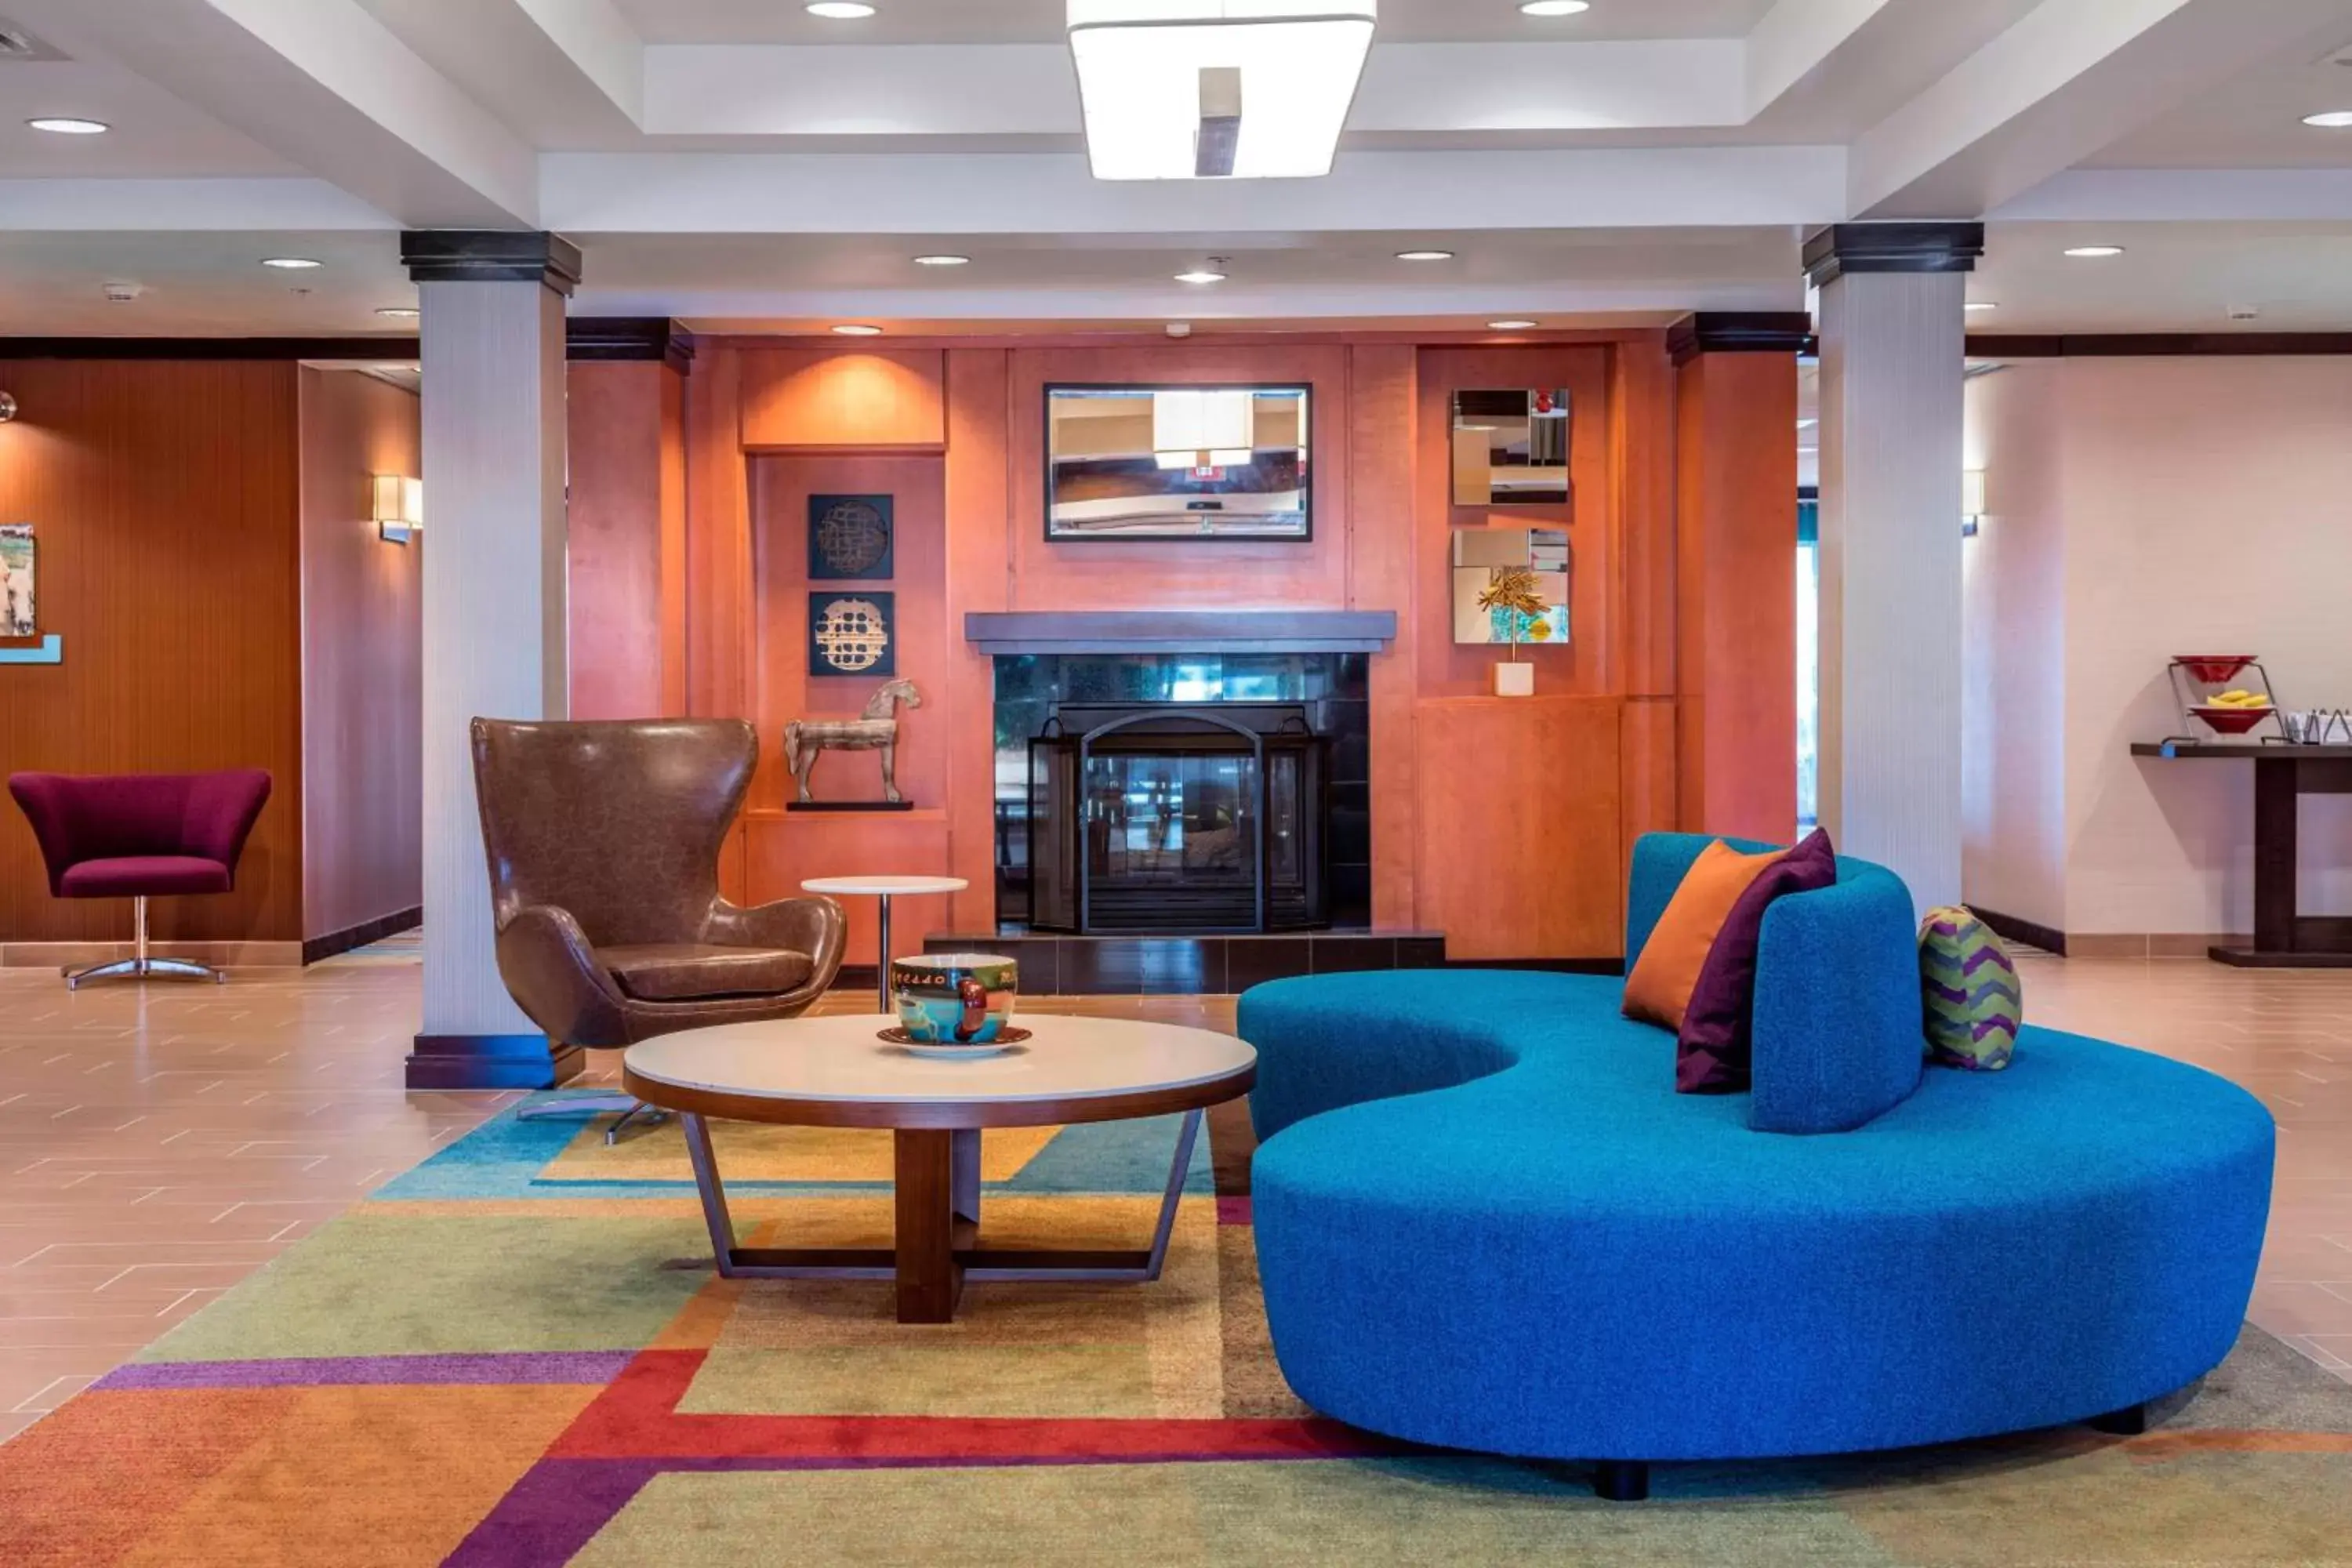 Lobby or reception, Lobby/Reception in Fairfield Inn & Suites Auburn Opelika